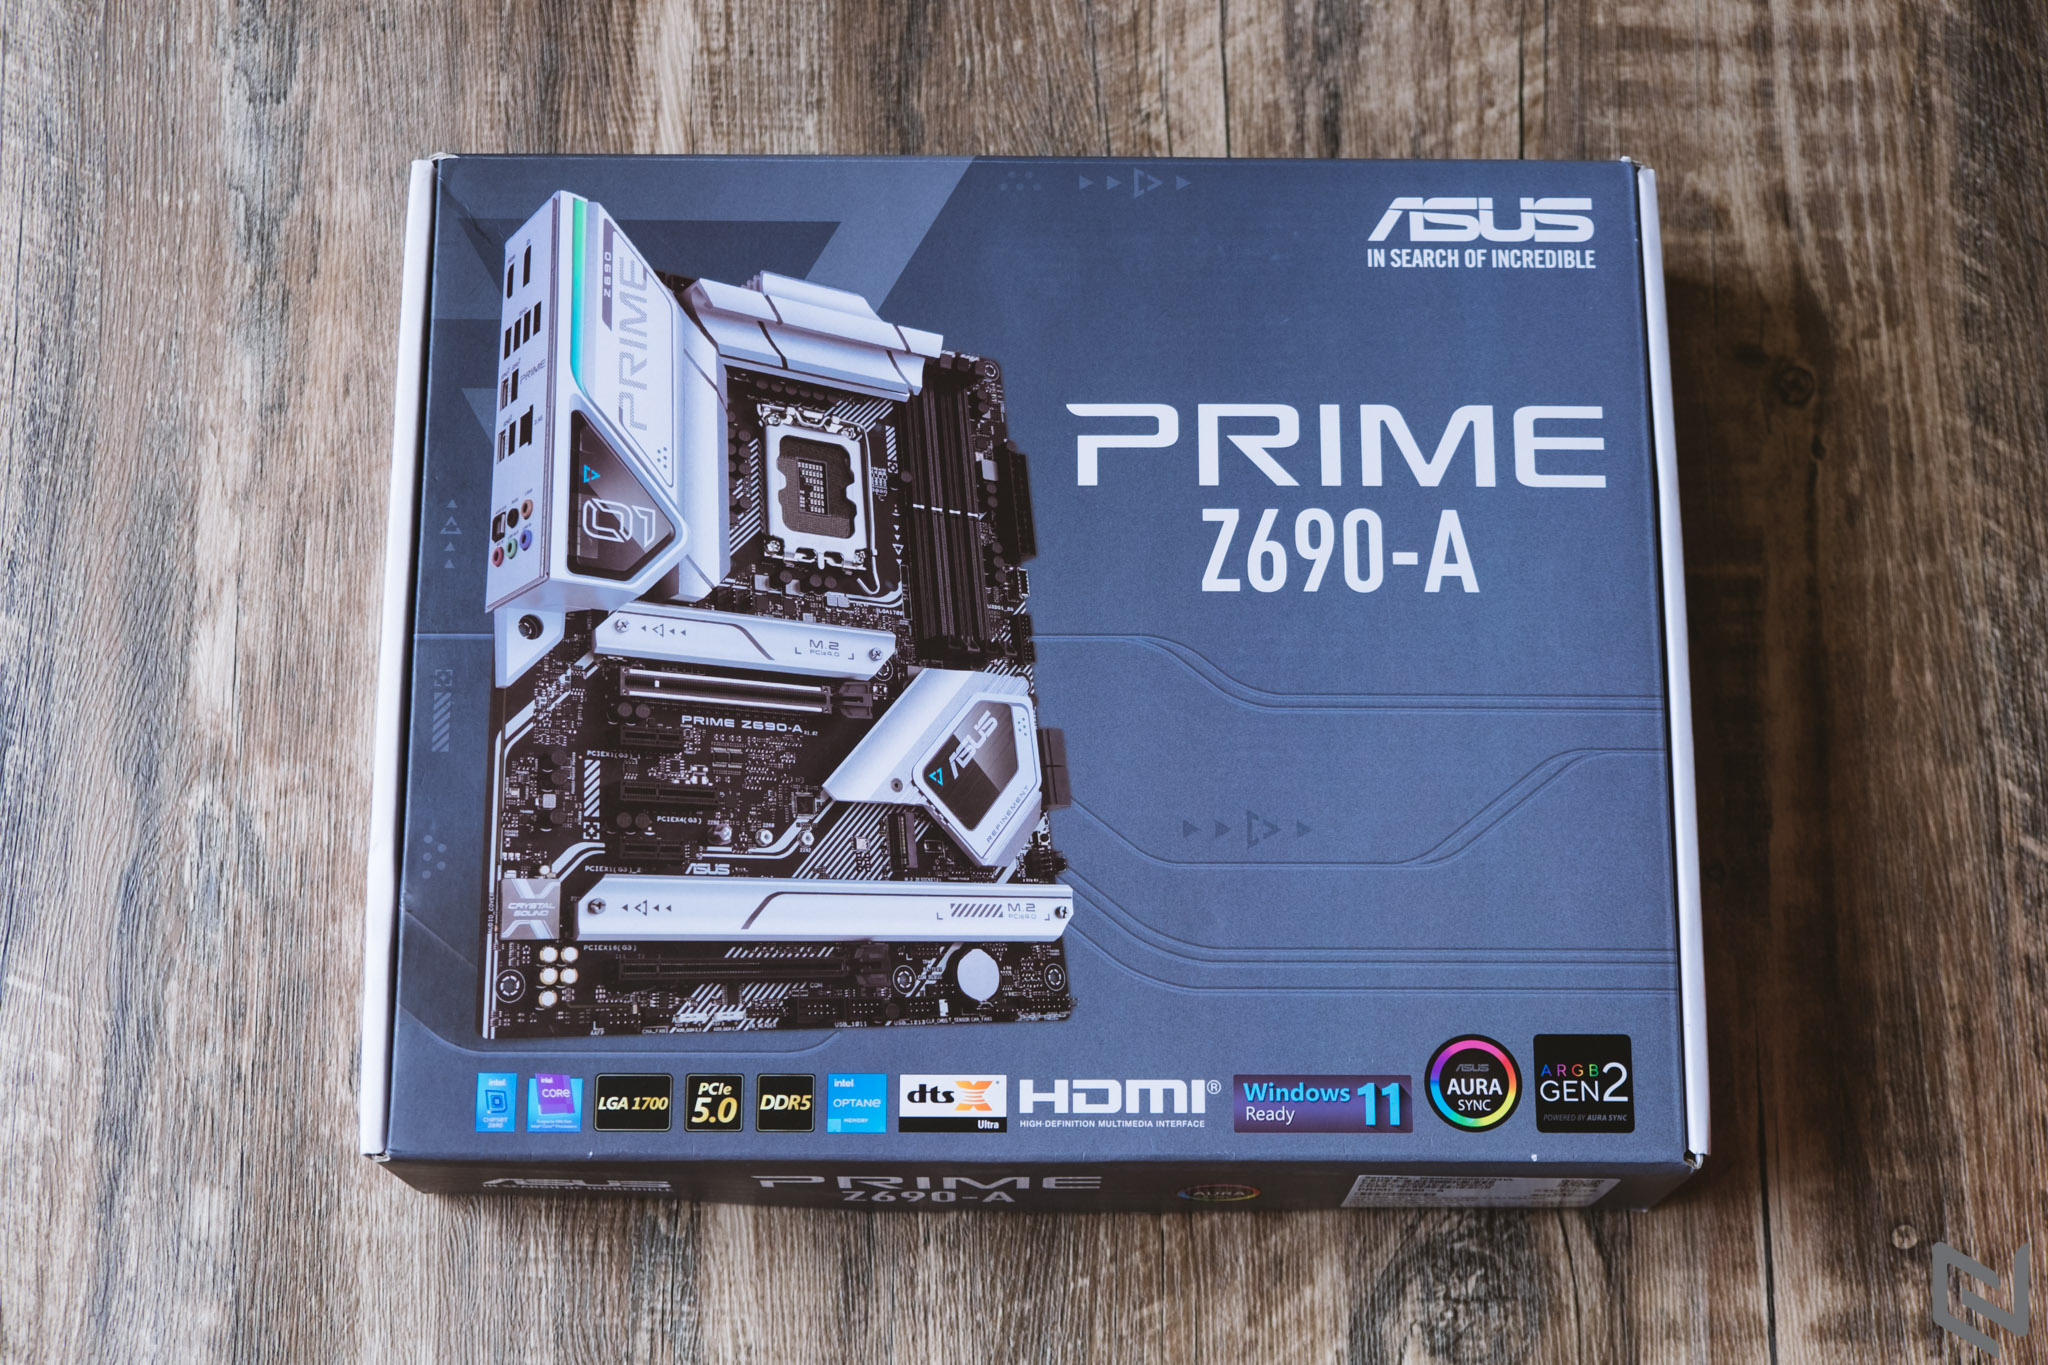 Trên tay chiếc bo mạch chủ ASUS Prime Z690-A: Tối ưu hiệu năng thông minh, hỗ trợ Intel Core 12th và trang bị DDR5